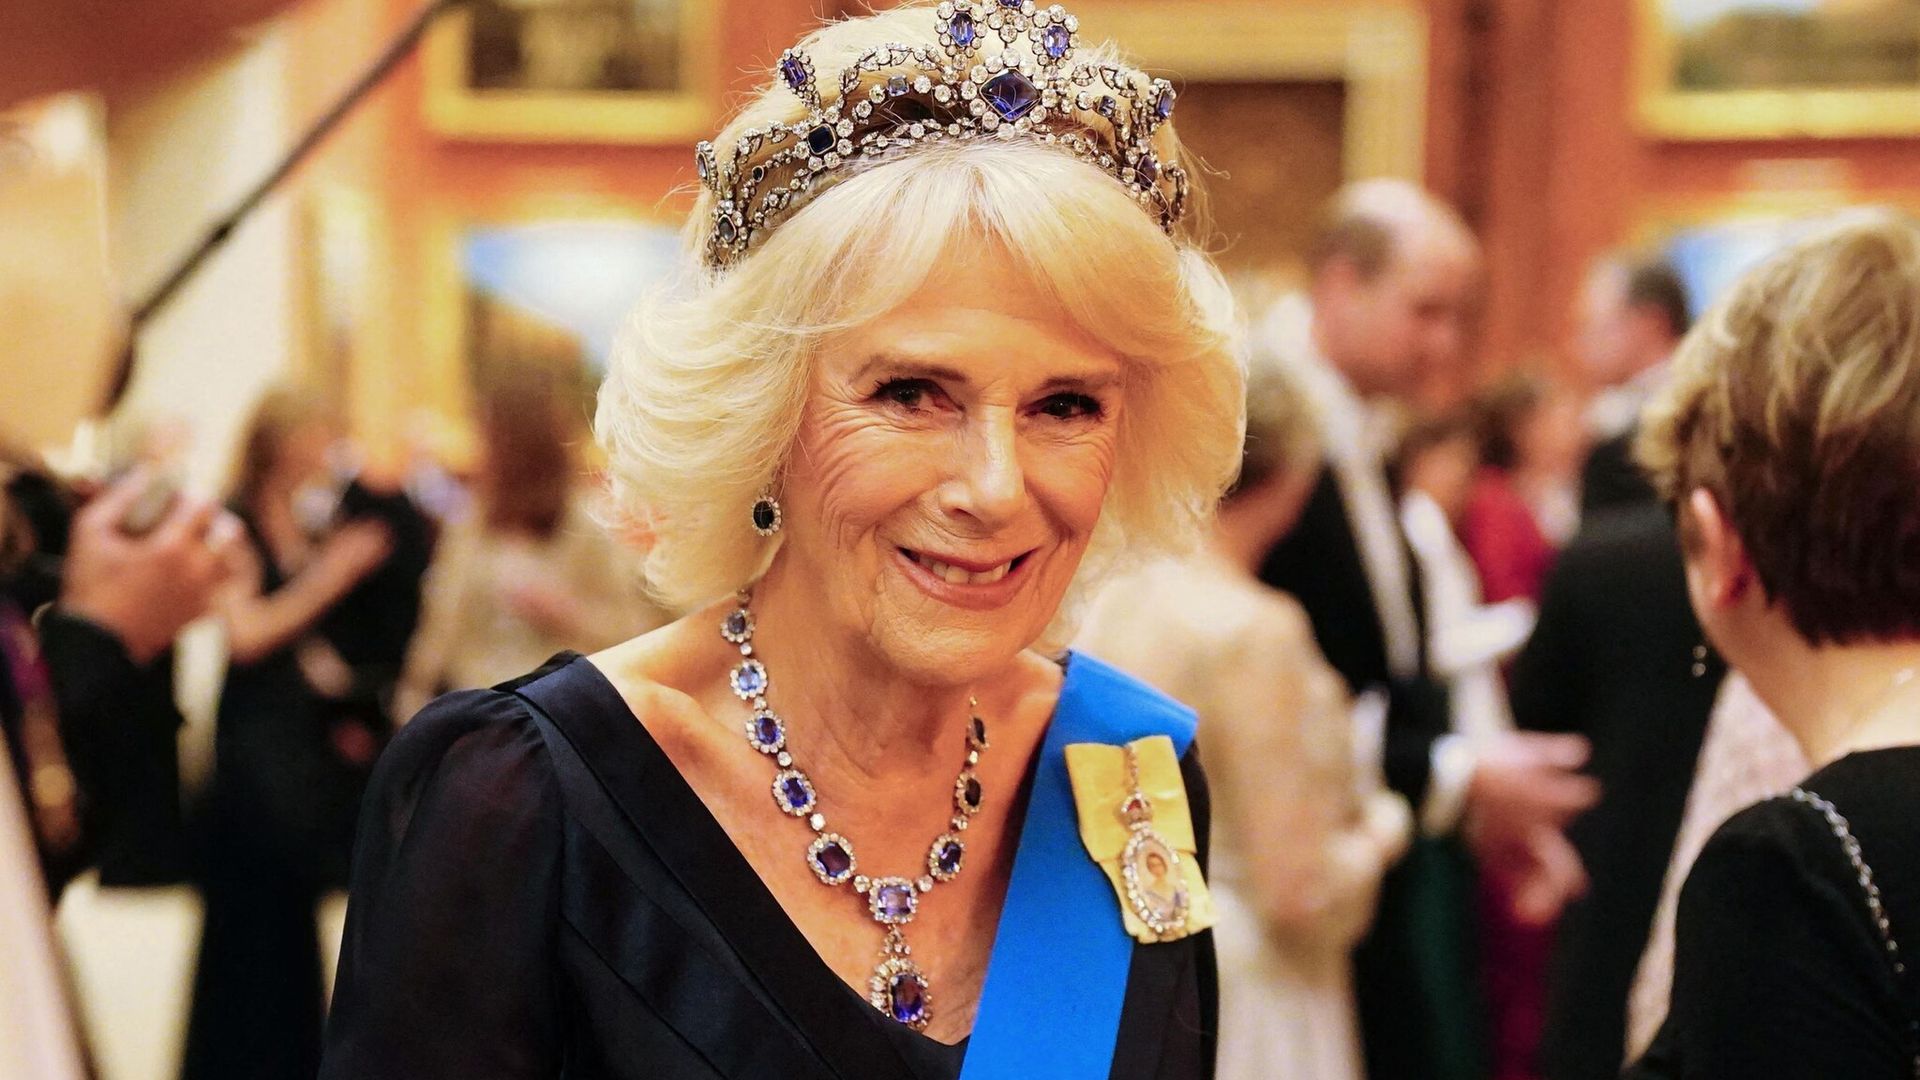 Nieto de la reina Camilla sufre una severa lesión, ¿esto afectará su papel en la coronación?